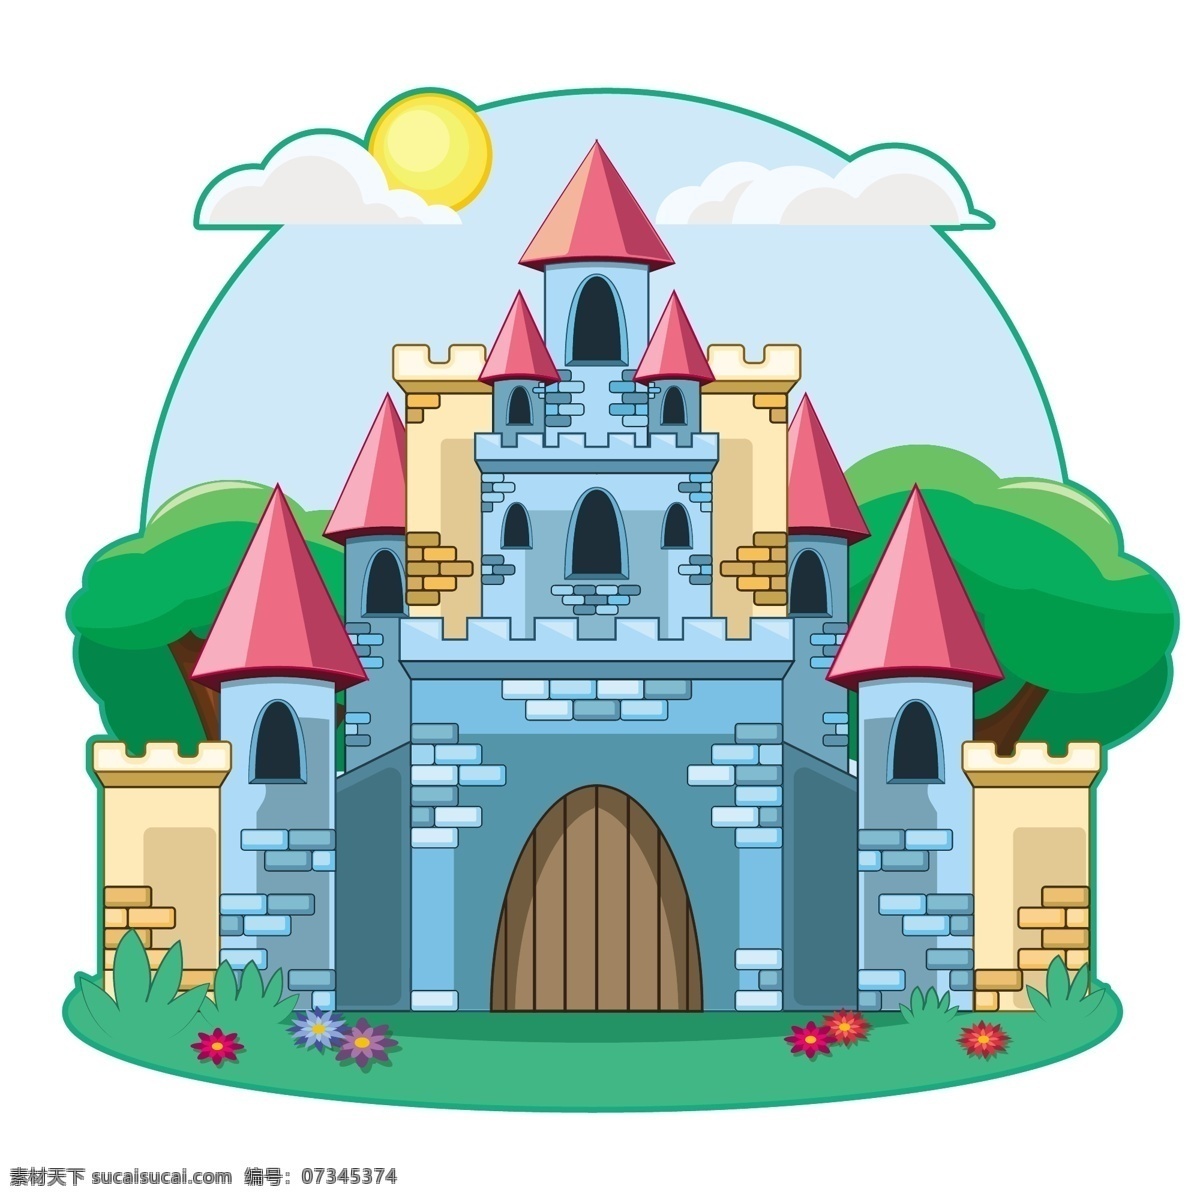 卡通城堡 手绘 欧式 建筑 彩色城堡 皇宫 欧式建筑 儿童城堡 卡通舞台背景 卡通皇宫 公主城堡 欧式城堡 城堡剪影 底纹边框 花边花纹